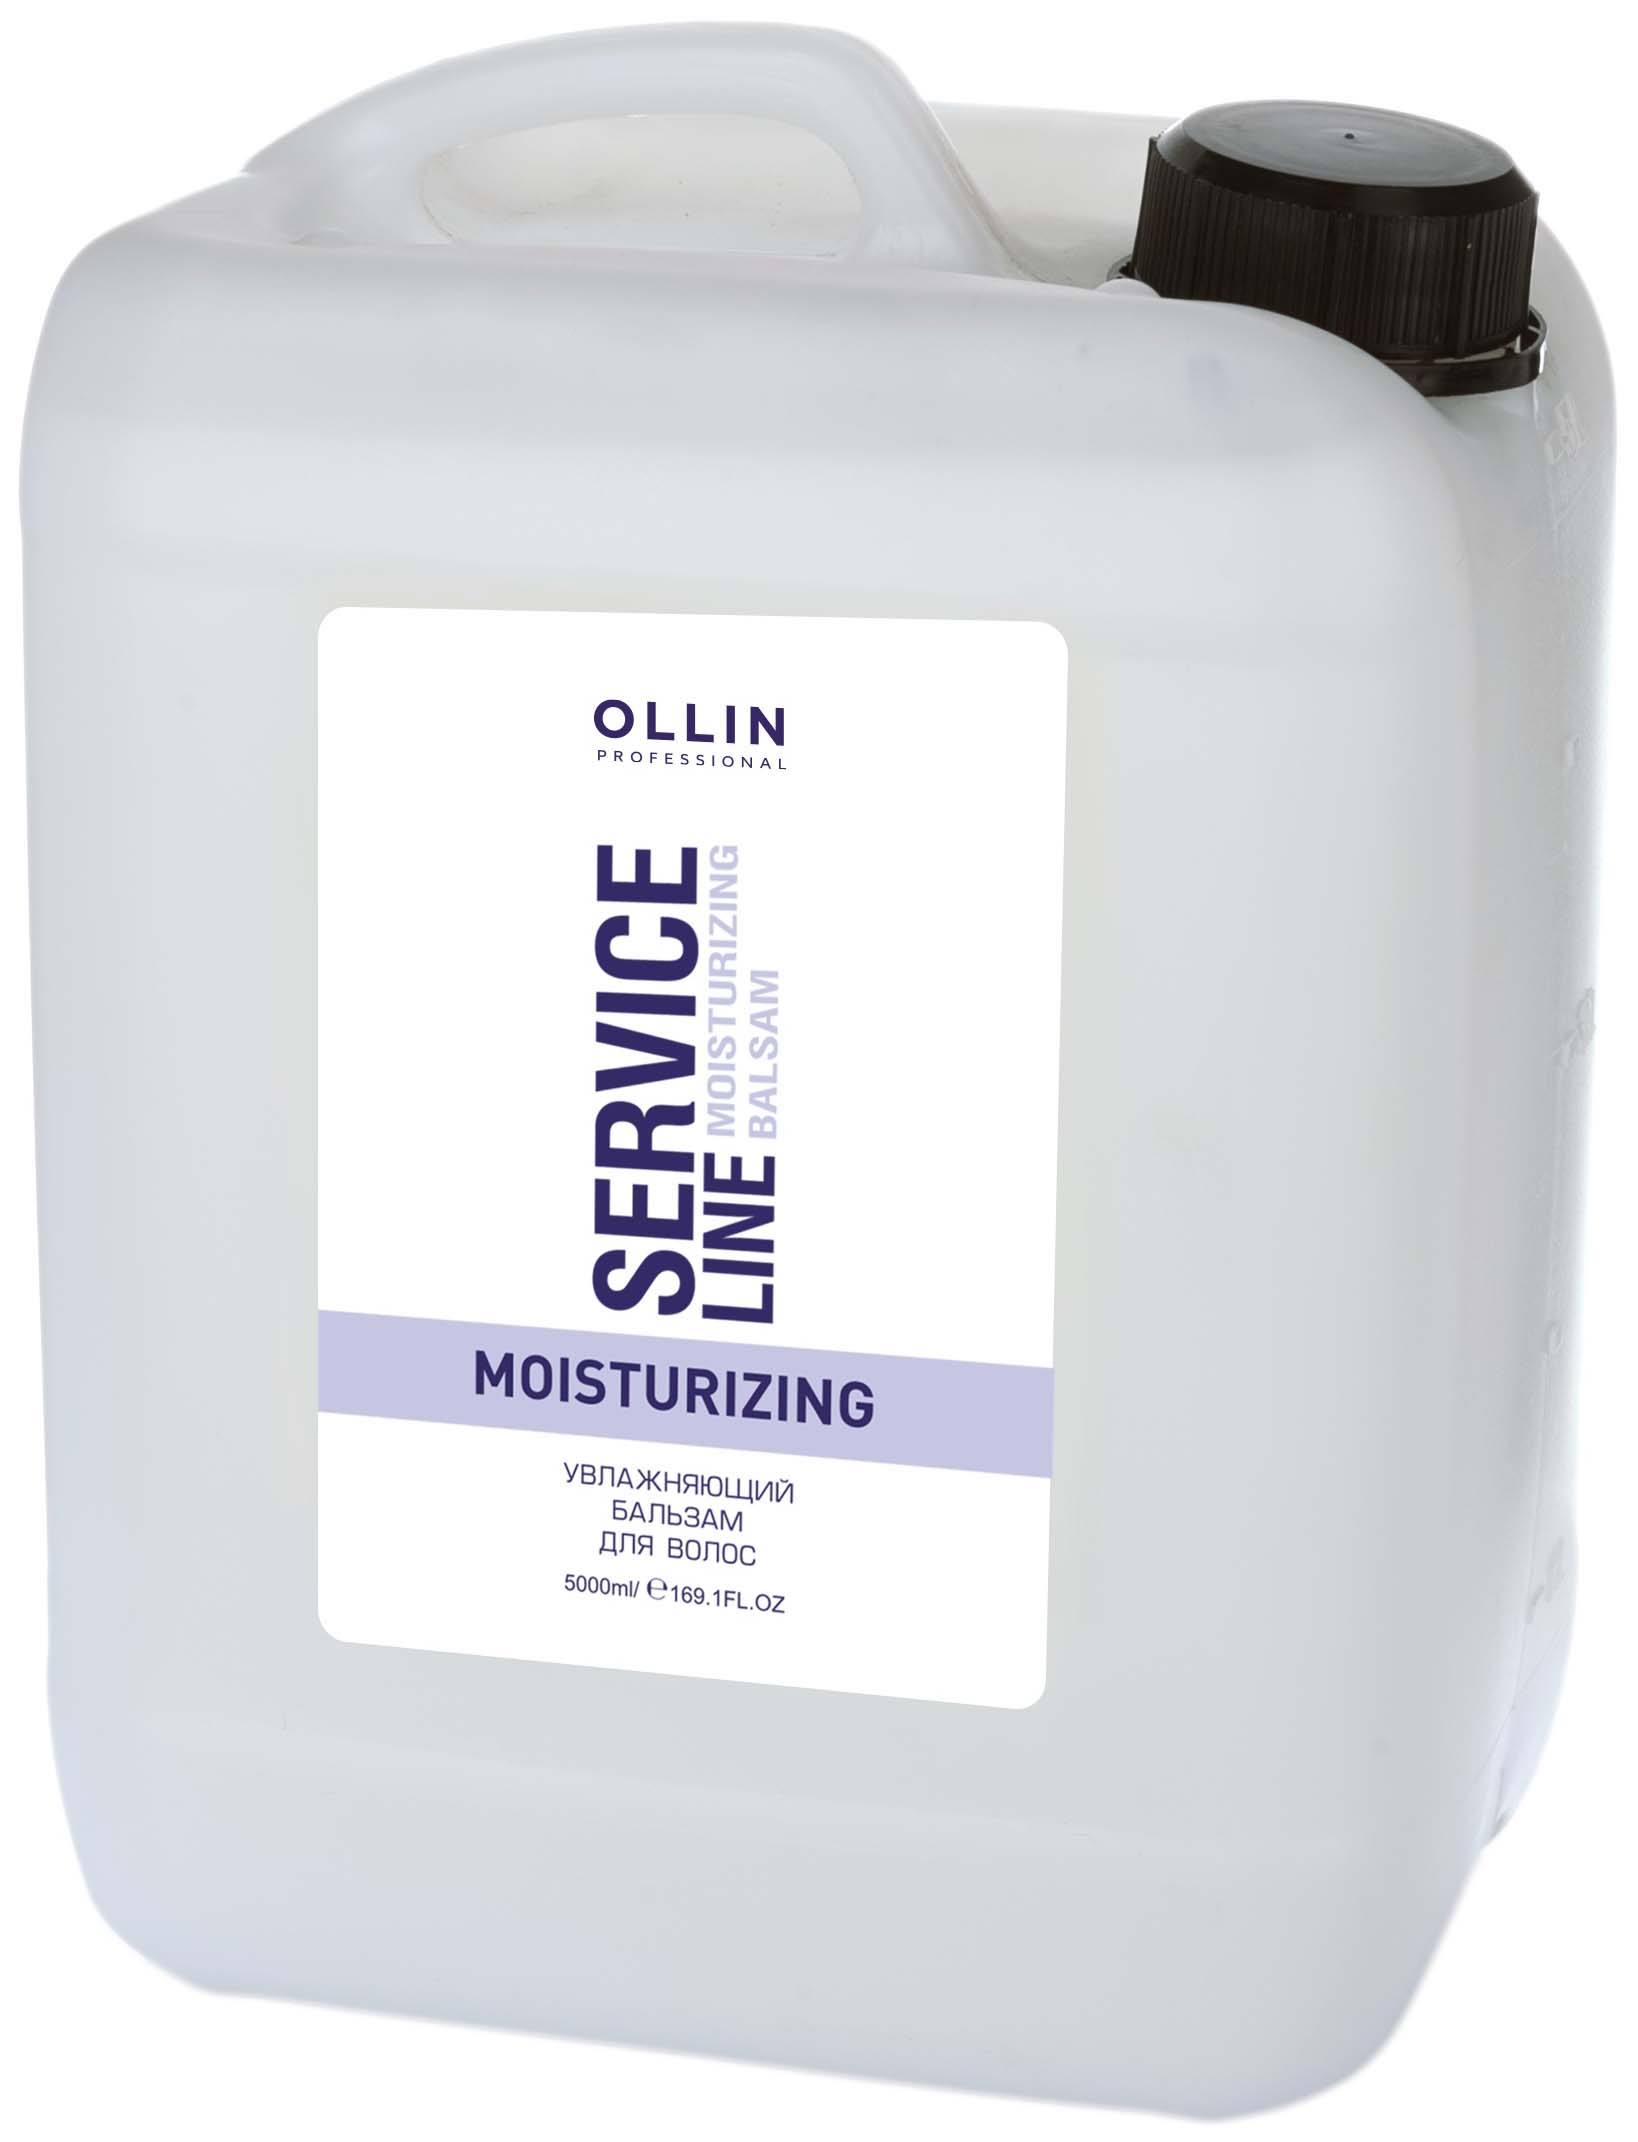 Бальзам для волос Ollin Professional Service Line Moisturizing 5000 мл ollin service line шампунь для придания холодных оттенков 1000 мл